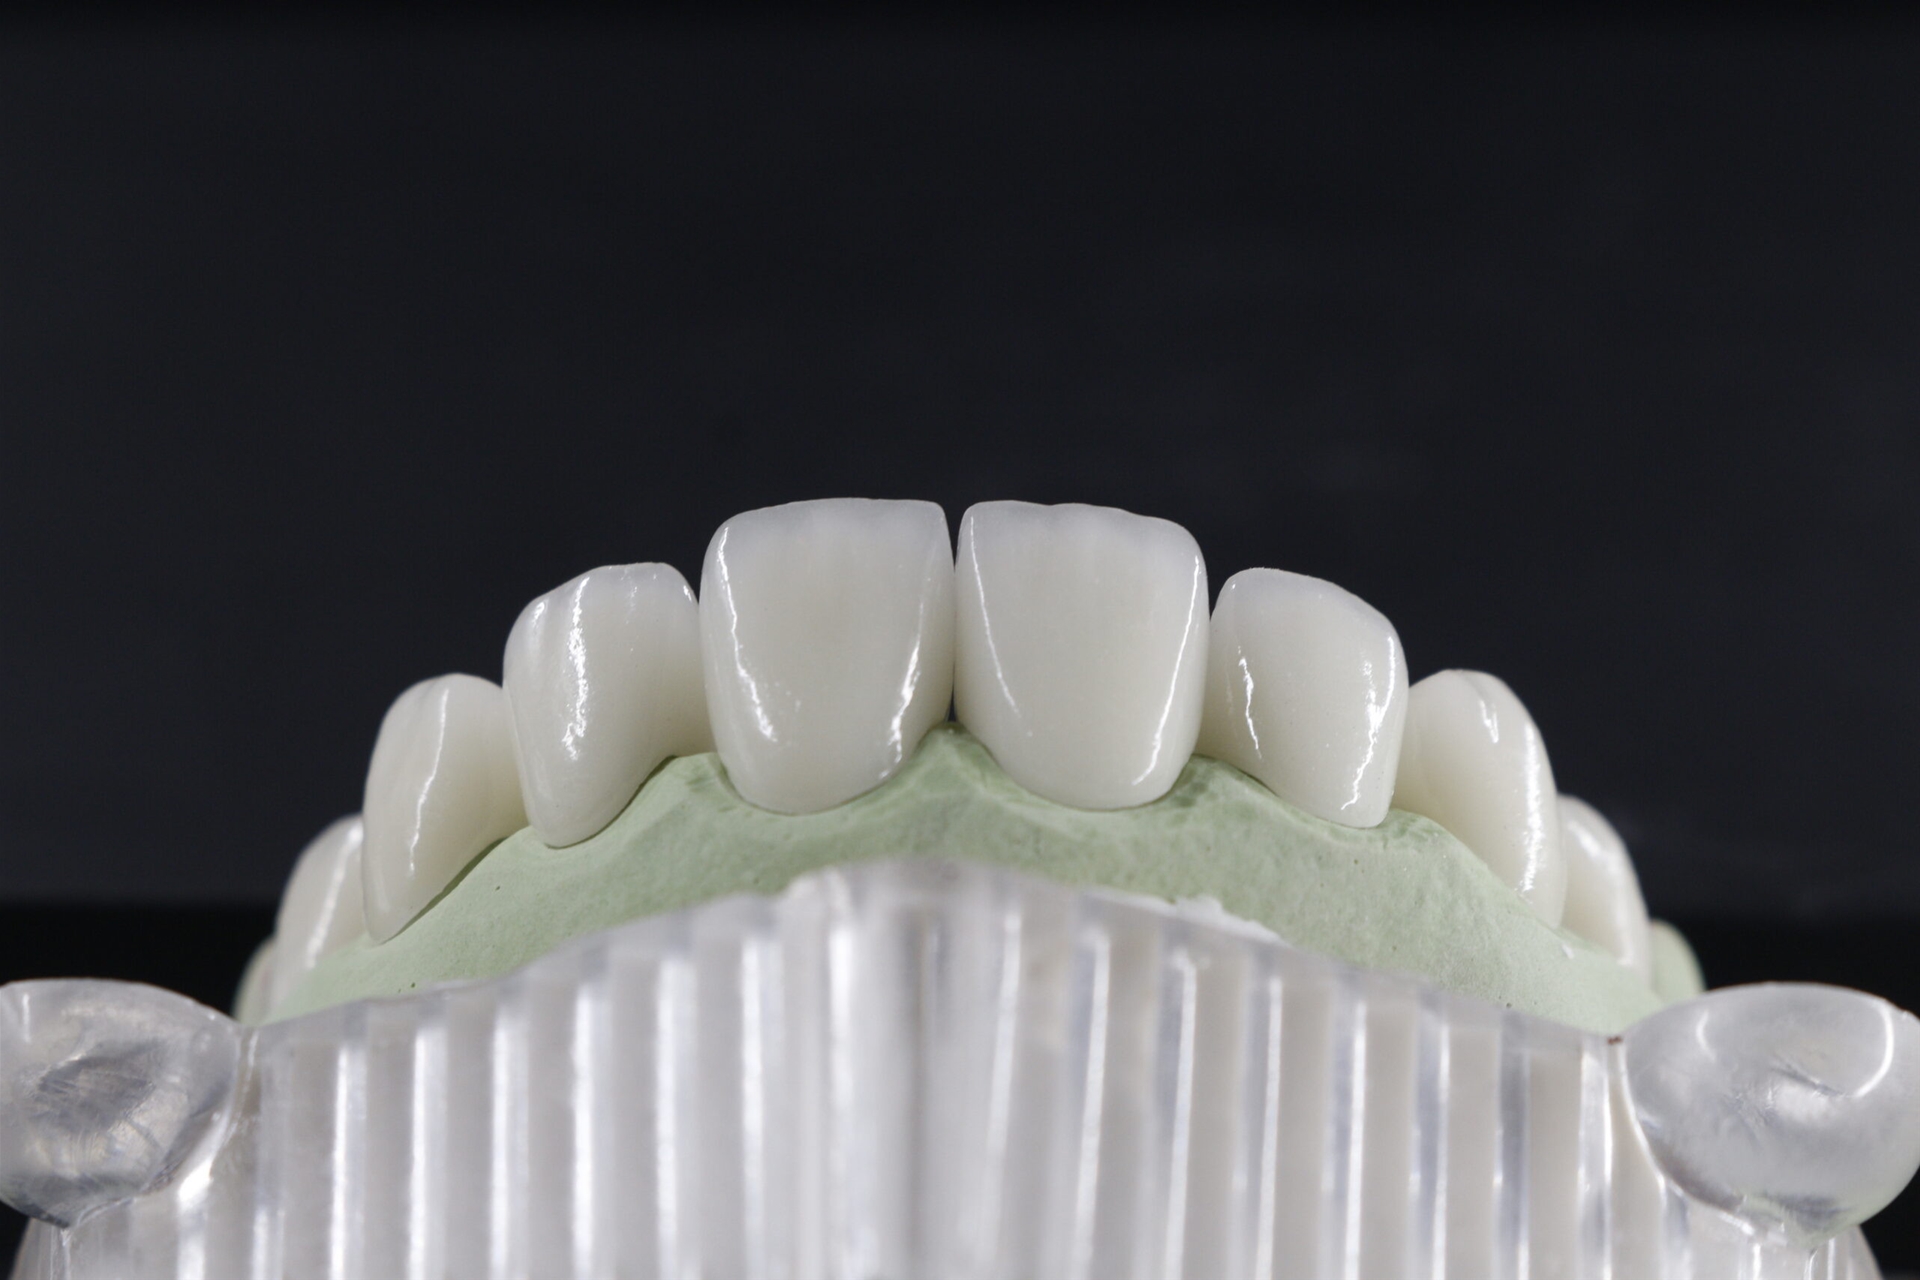 Răng sứ Zirconia DDBIO được ưa chuộng nhờ tính chất vượt trội